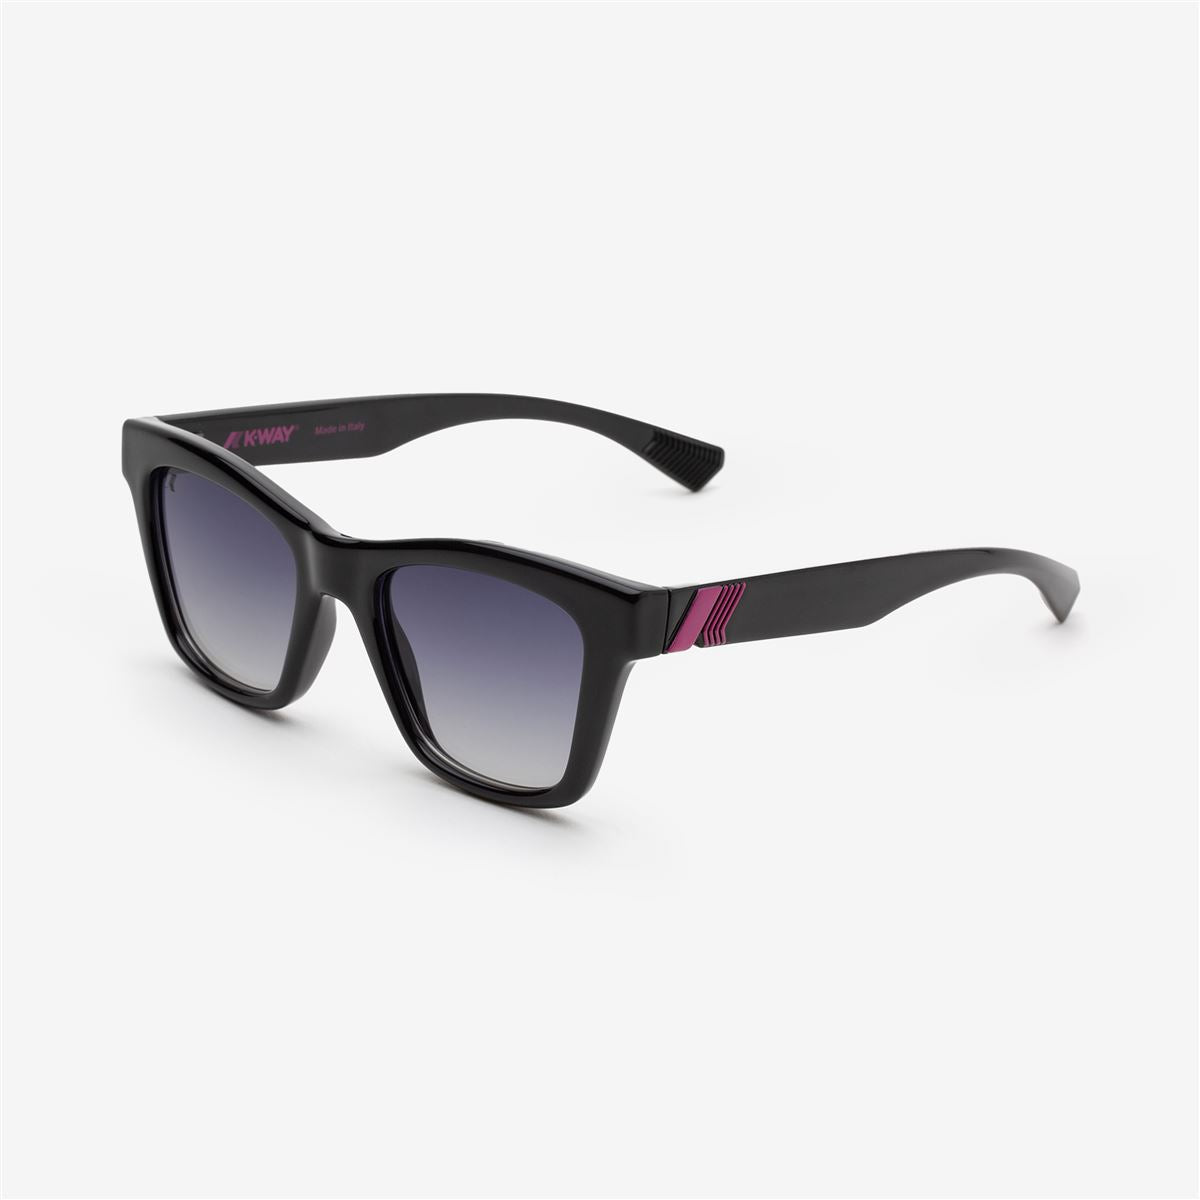 NUMERO - Glasses - Sunglasses - Woman - Black